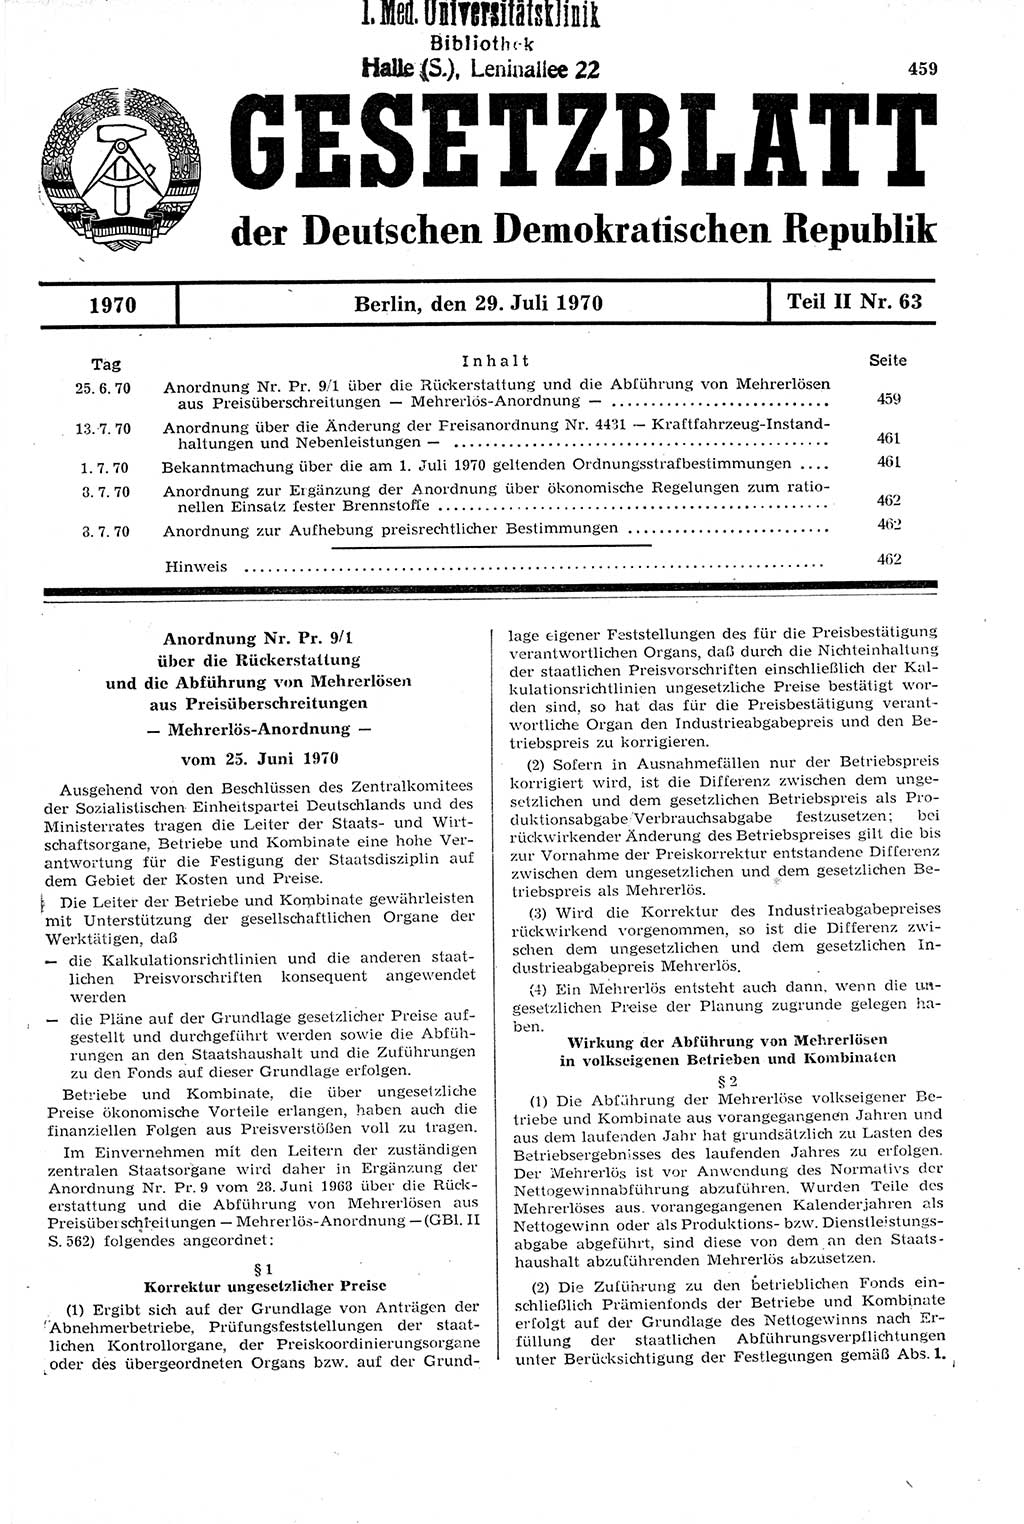 Gesetzblatt (GBl.) der Deutschen Demokratischen Republik (DDR) Teil ⅠⅠ 1970, Seite 459 (GBl. DDR ⅠⅠ 1970, S. 459)